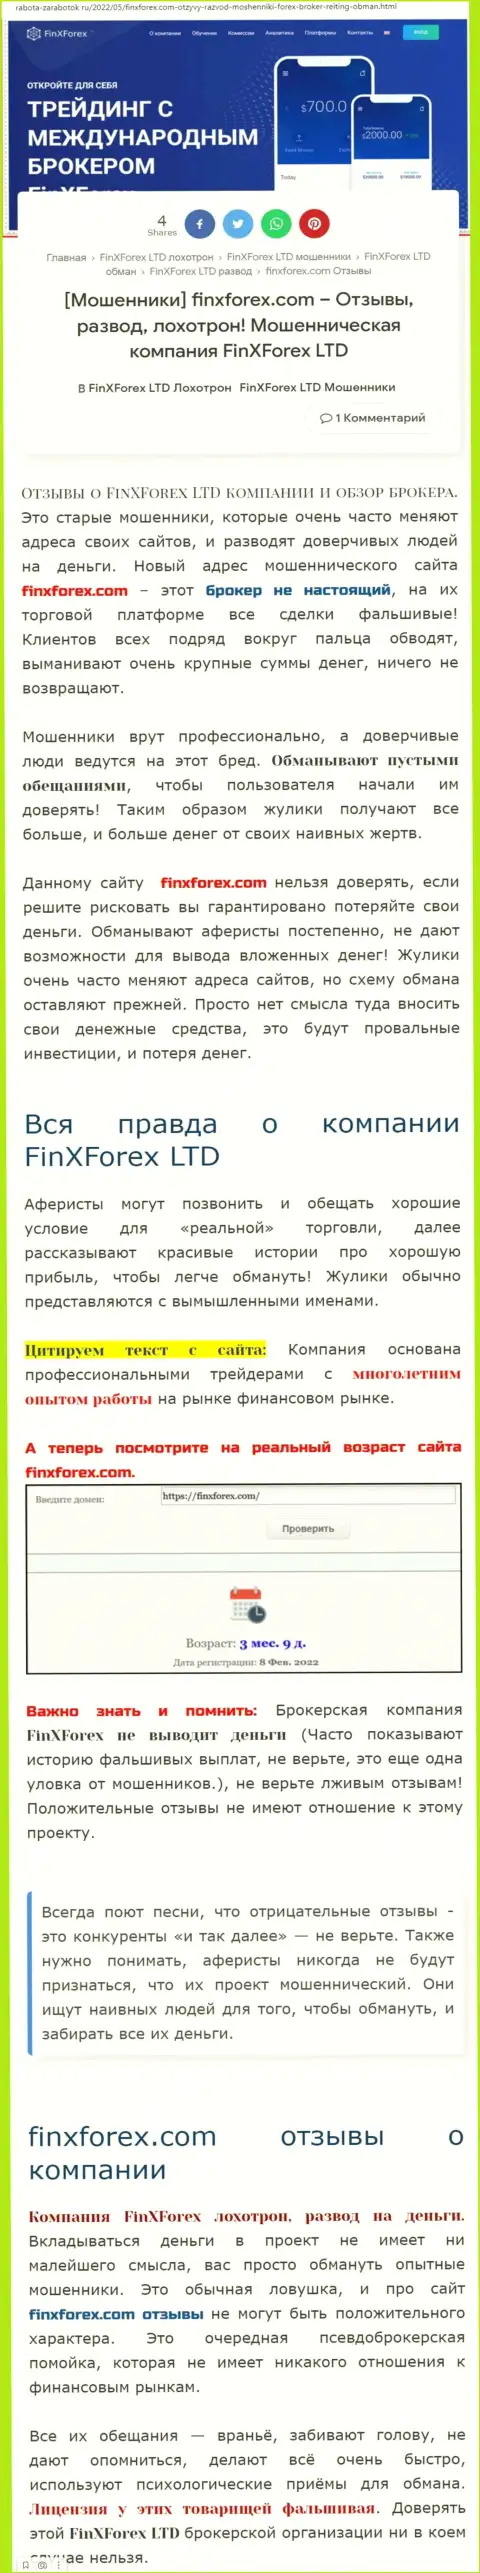 Создатель обзора о FinXForex утверждает, что в конторе FinXForex LTD разводят